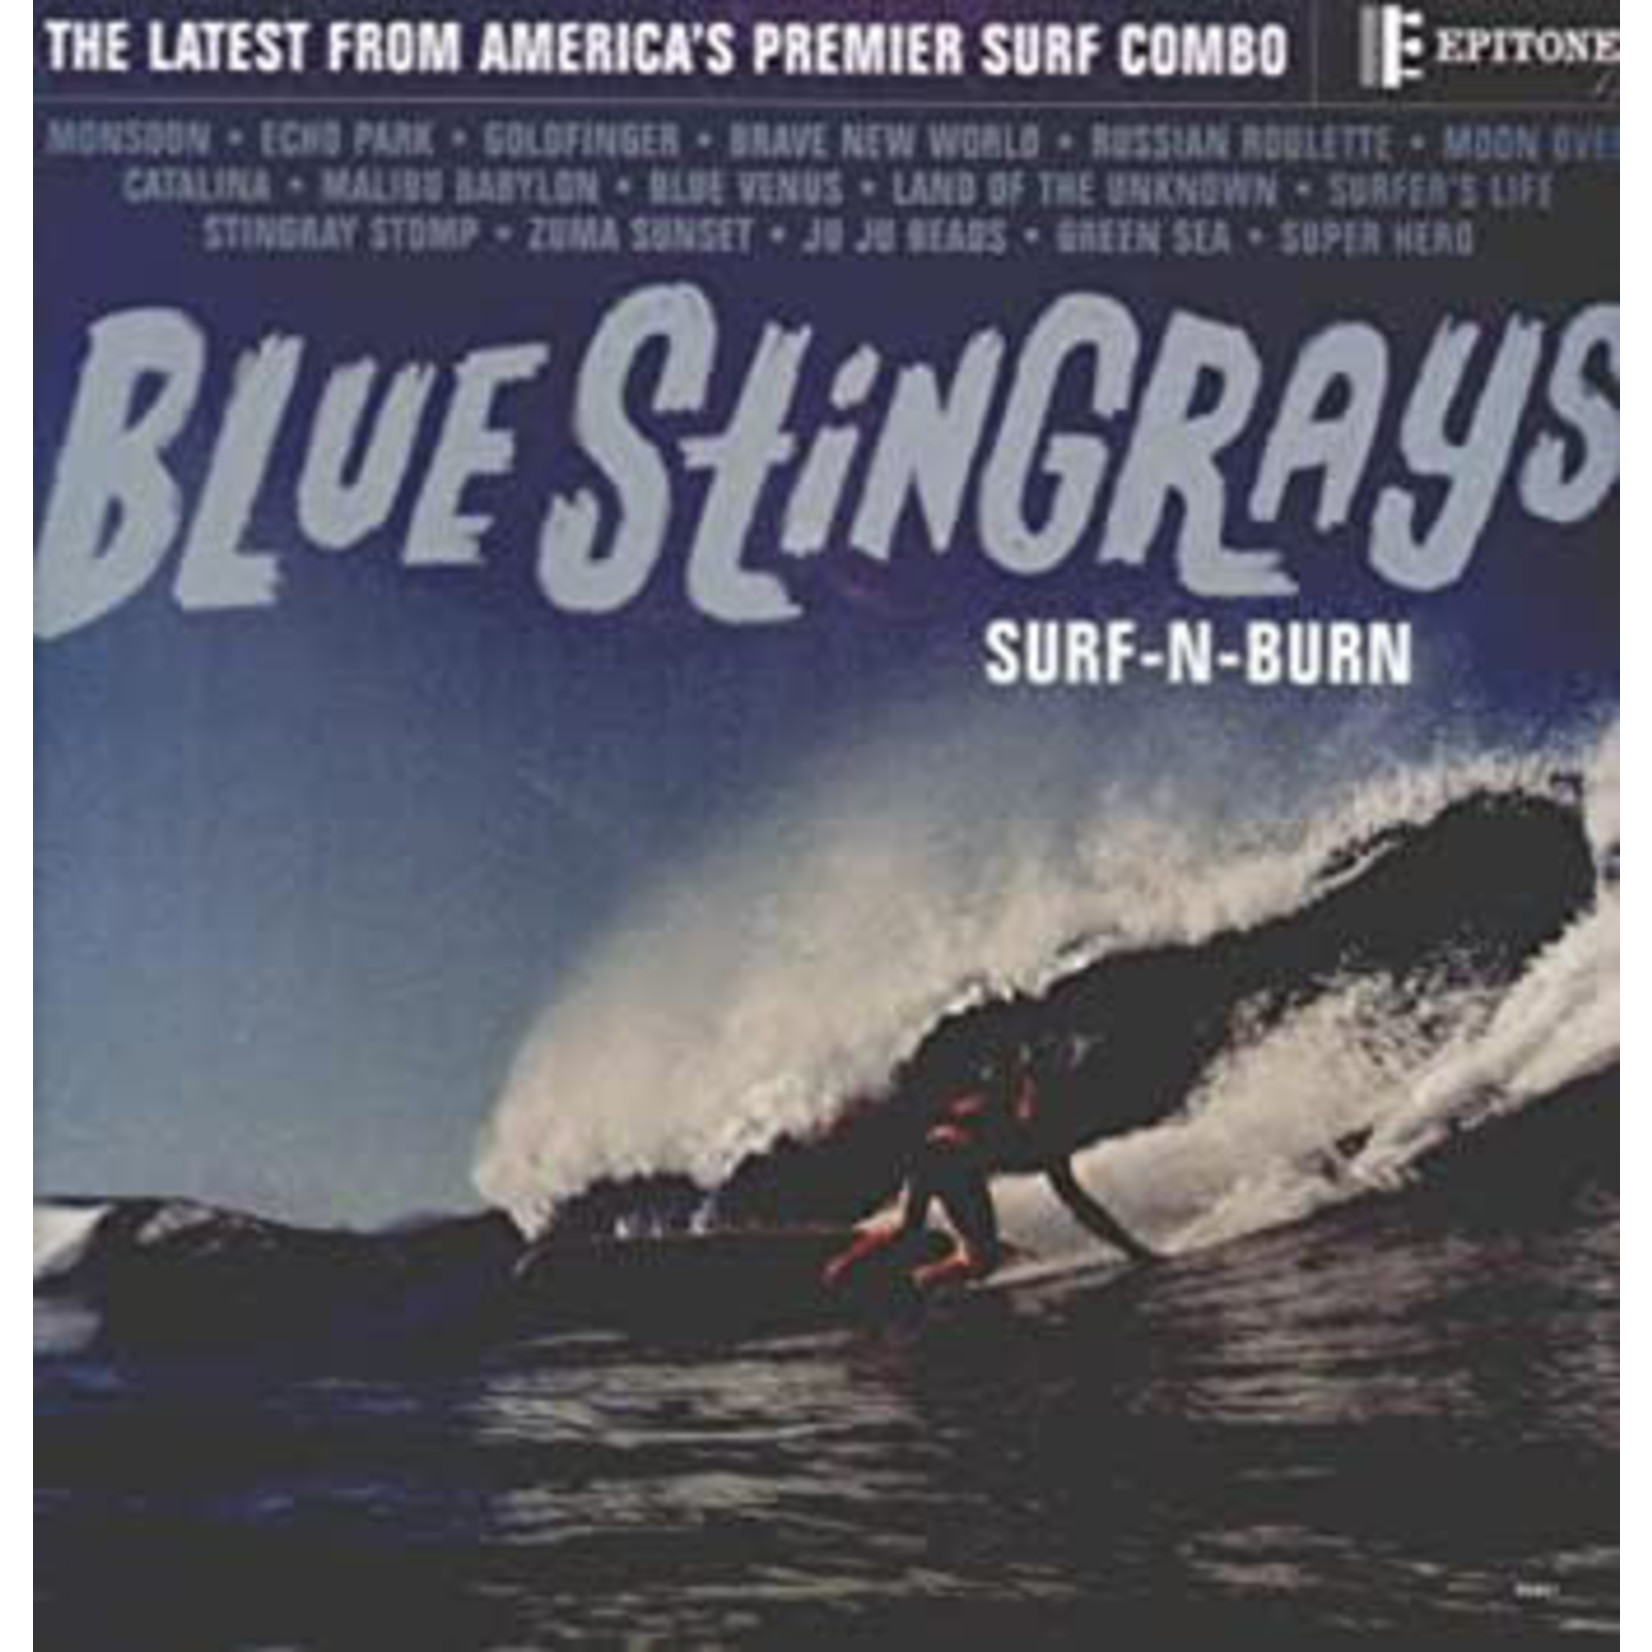 [New] Blue Stingrays: Surf-n-Burn (indie exclusive) [EPITONE]